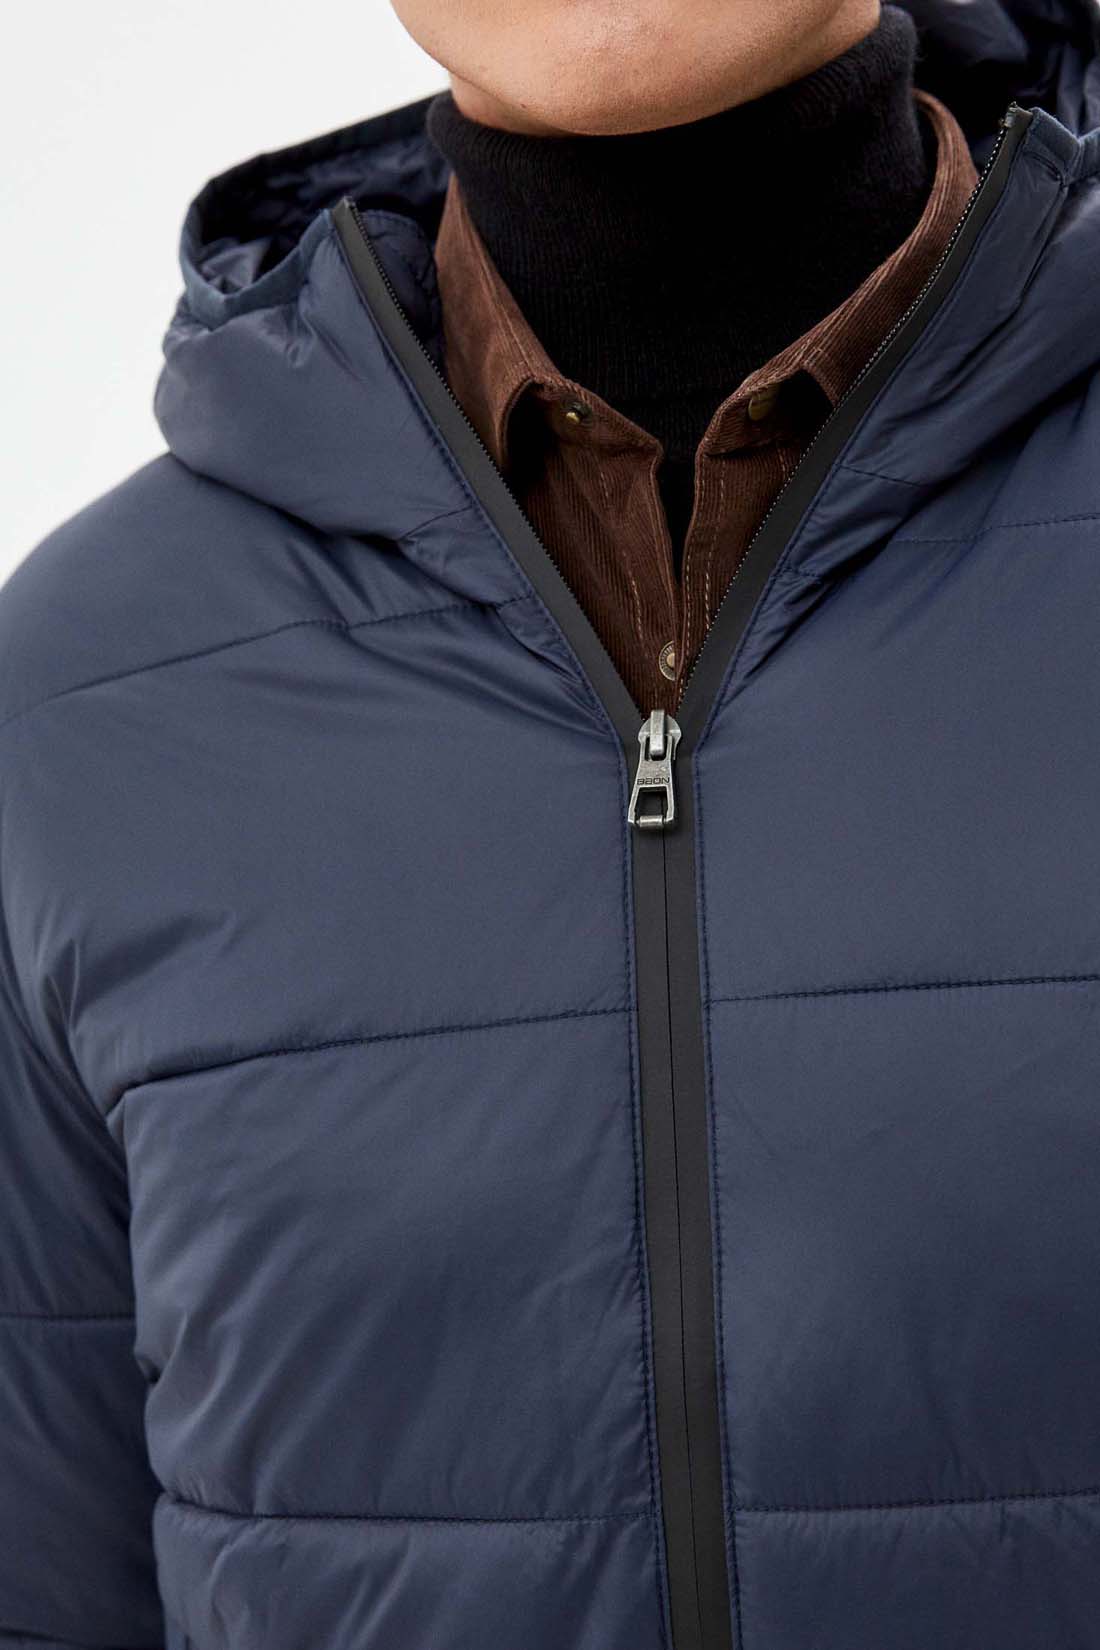 Куртка (Эко пух) (арт. baon B541701), размер XL, цвет синий Куртка (Эко пух) (арт. baon B541701) - фото 3